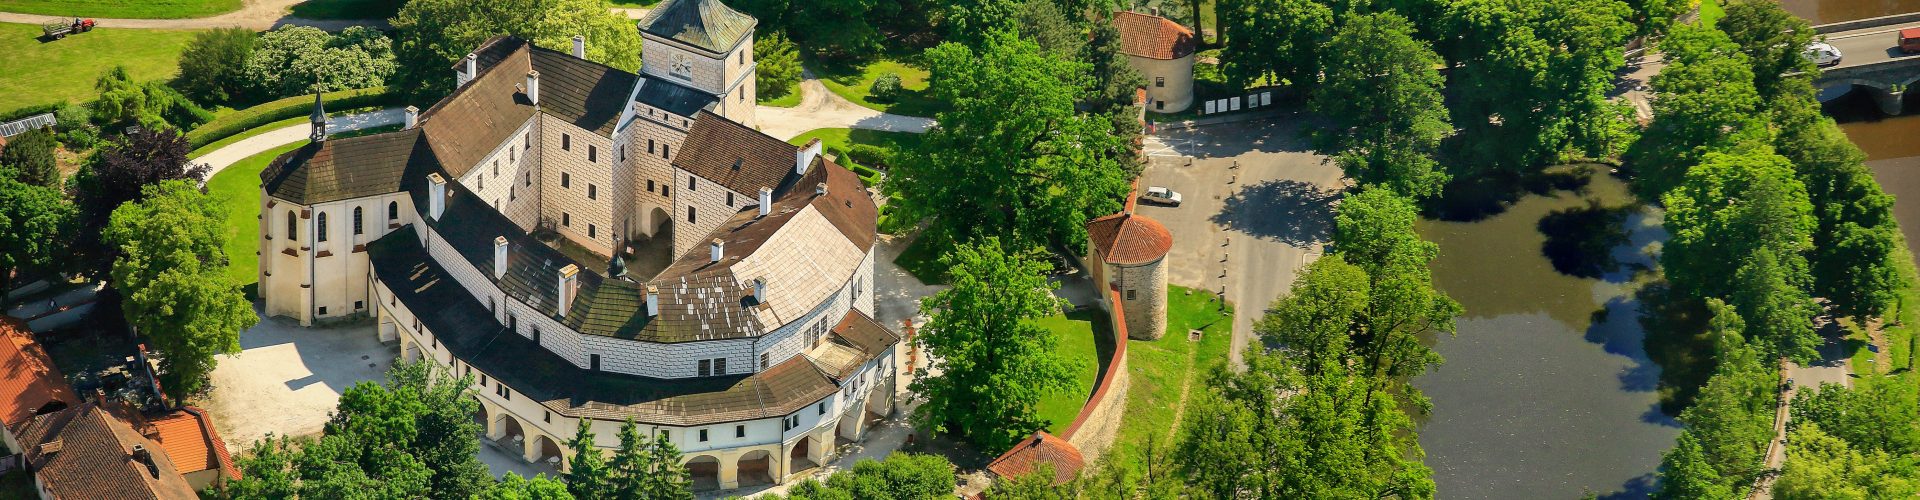 Letecký pohled na areál zámku Březnice